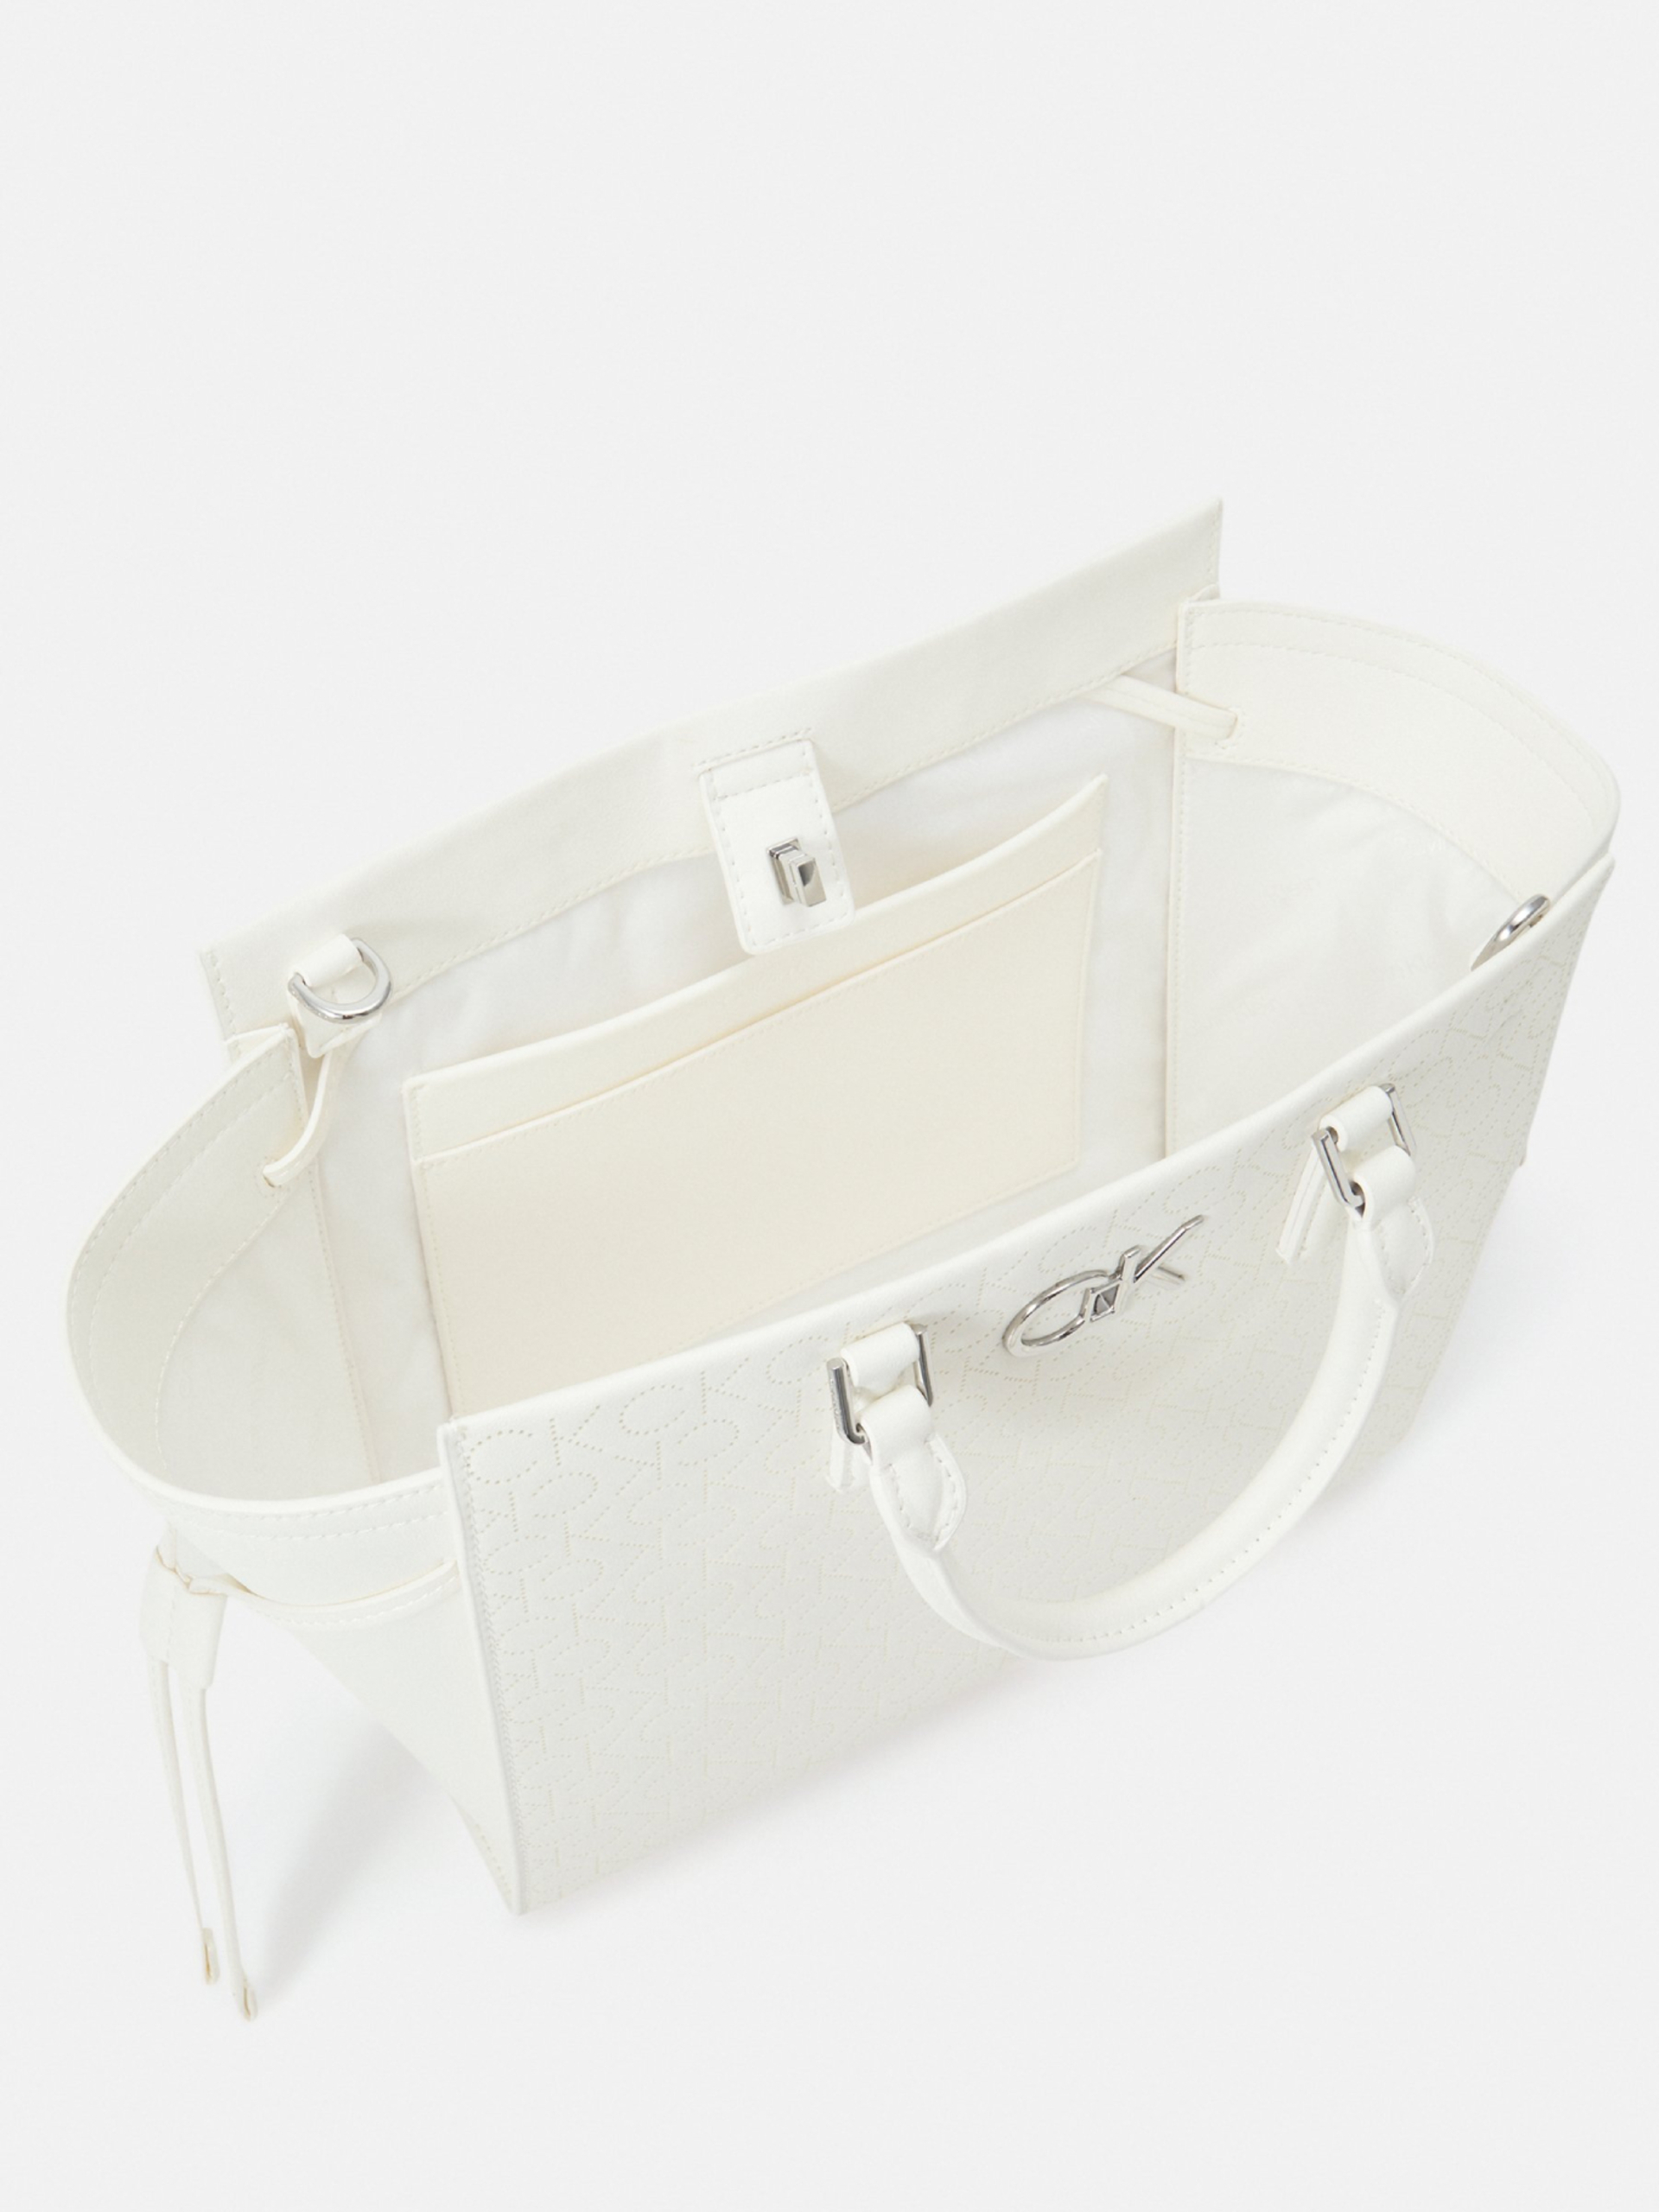 Calvin Klein dámská bílá kabelka - OS (YAF)